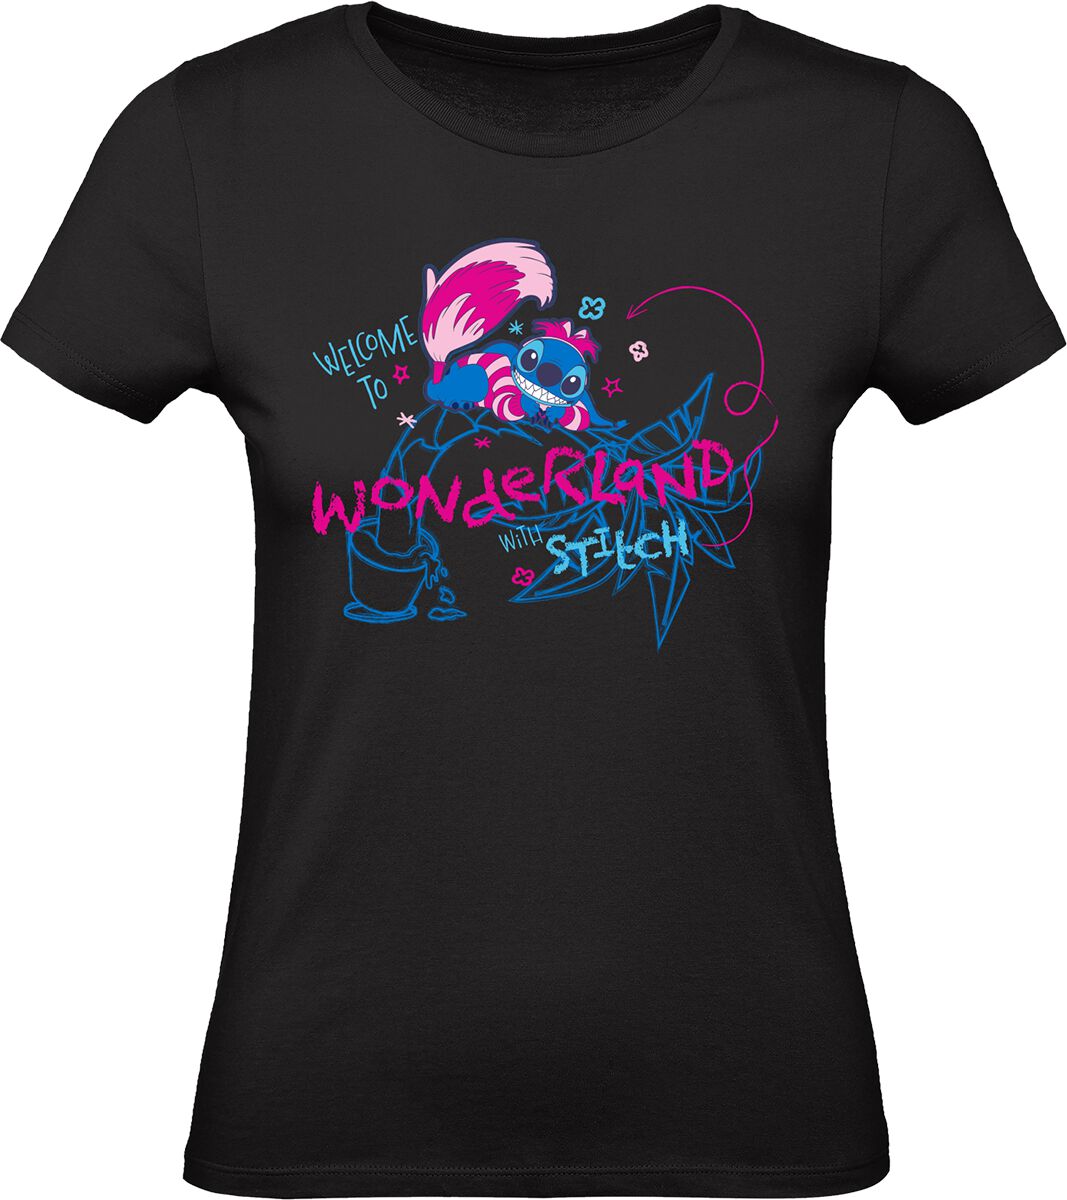 Lilo & Stitch - Disney T-Shirt - Stitch - Grinsekatze - Welcome To Wonderland With Stitch - S bis XXL - für Damen - Größe XL - schwarz  - Lizenzierter